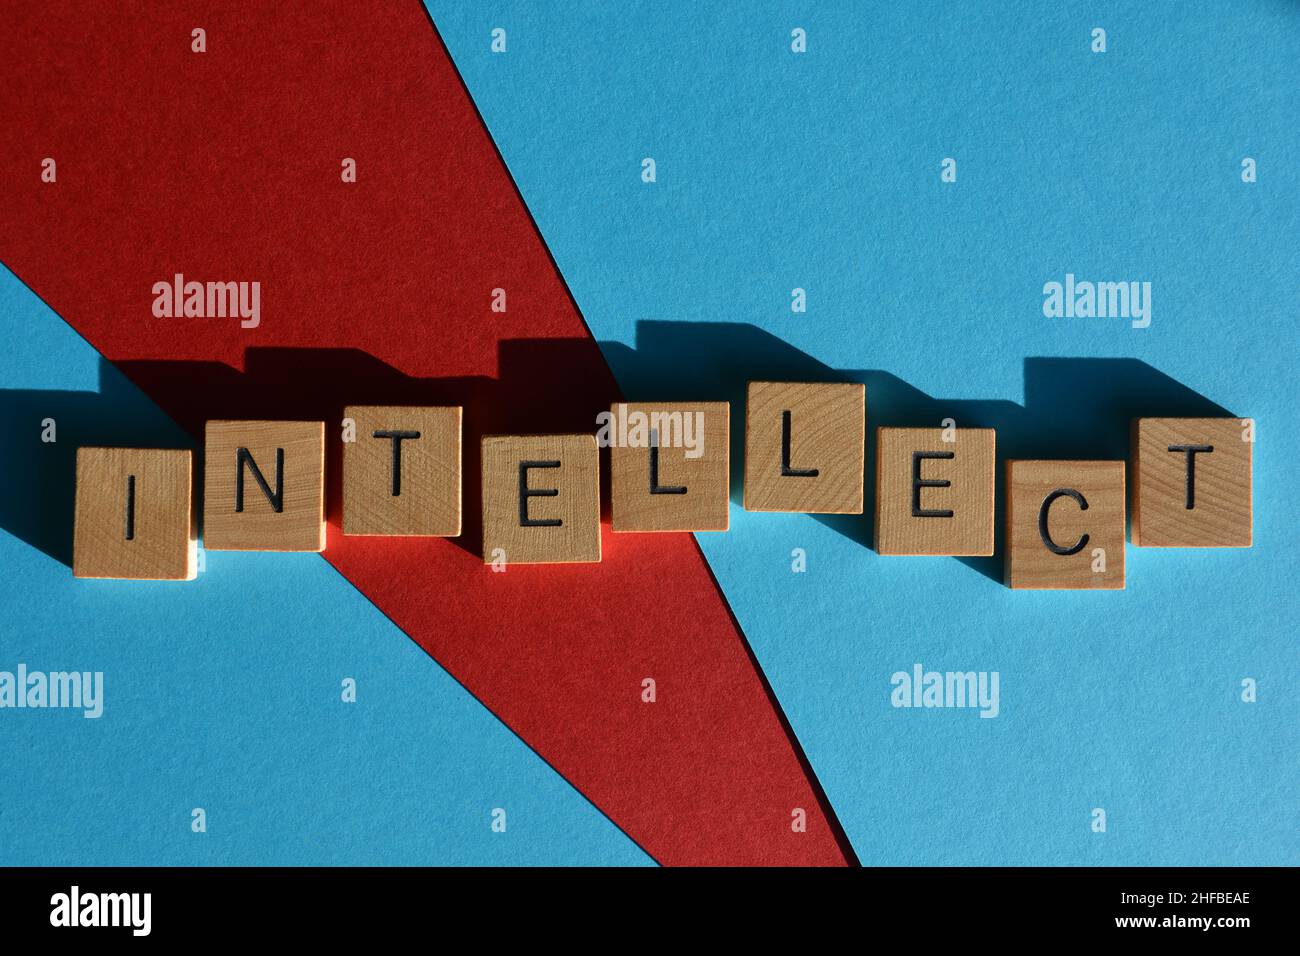 Intellect, mot en lettres de l'alphabet de bois isolées sur fond rouge et bleu Banque D'Images